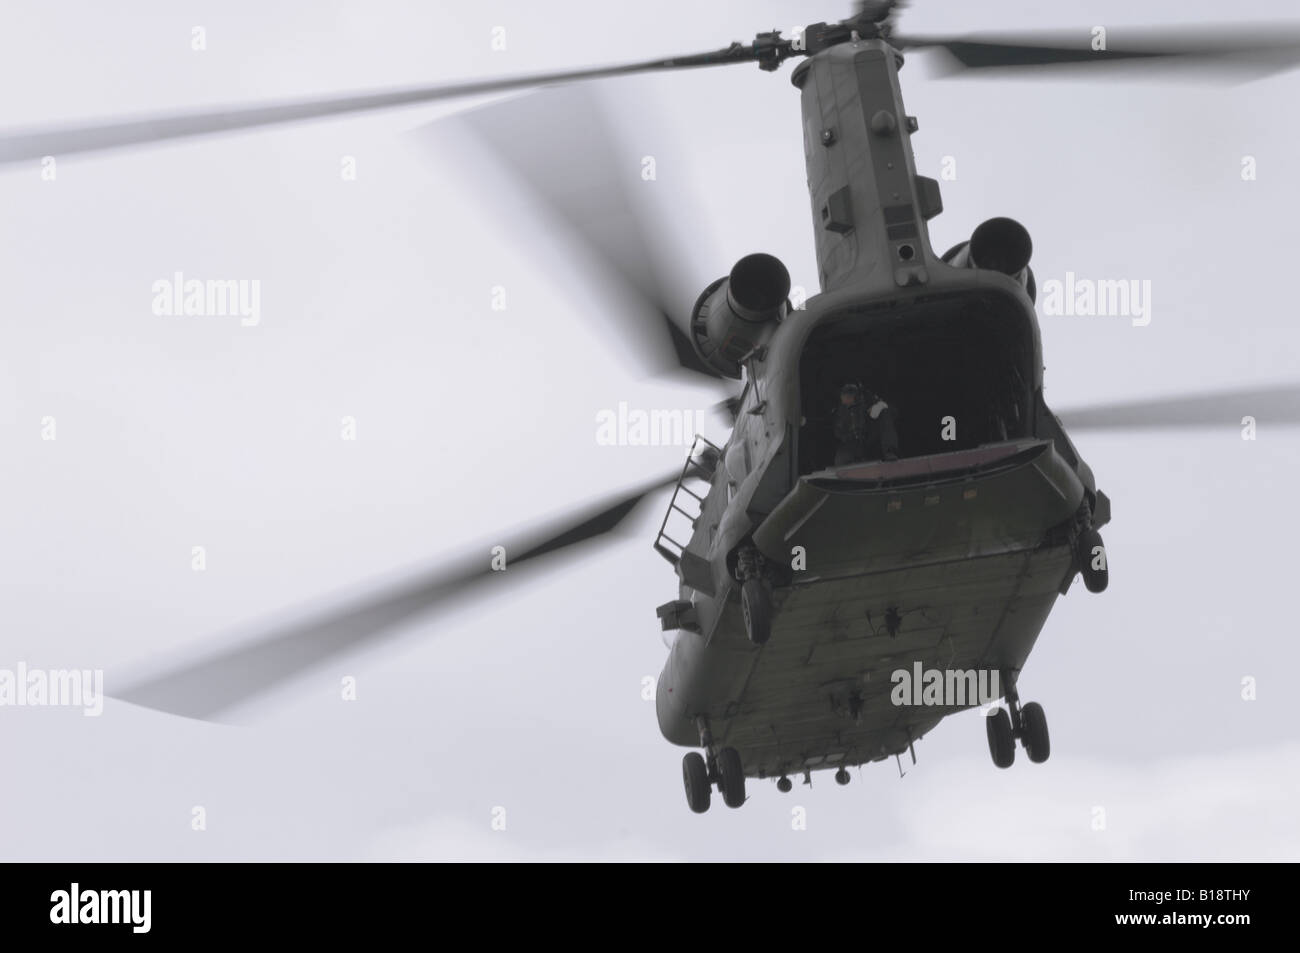 Elicottero chinook immagini e fotografie stock ad alta risoluzione - Alamy